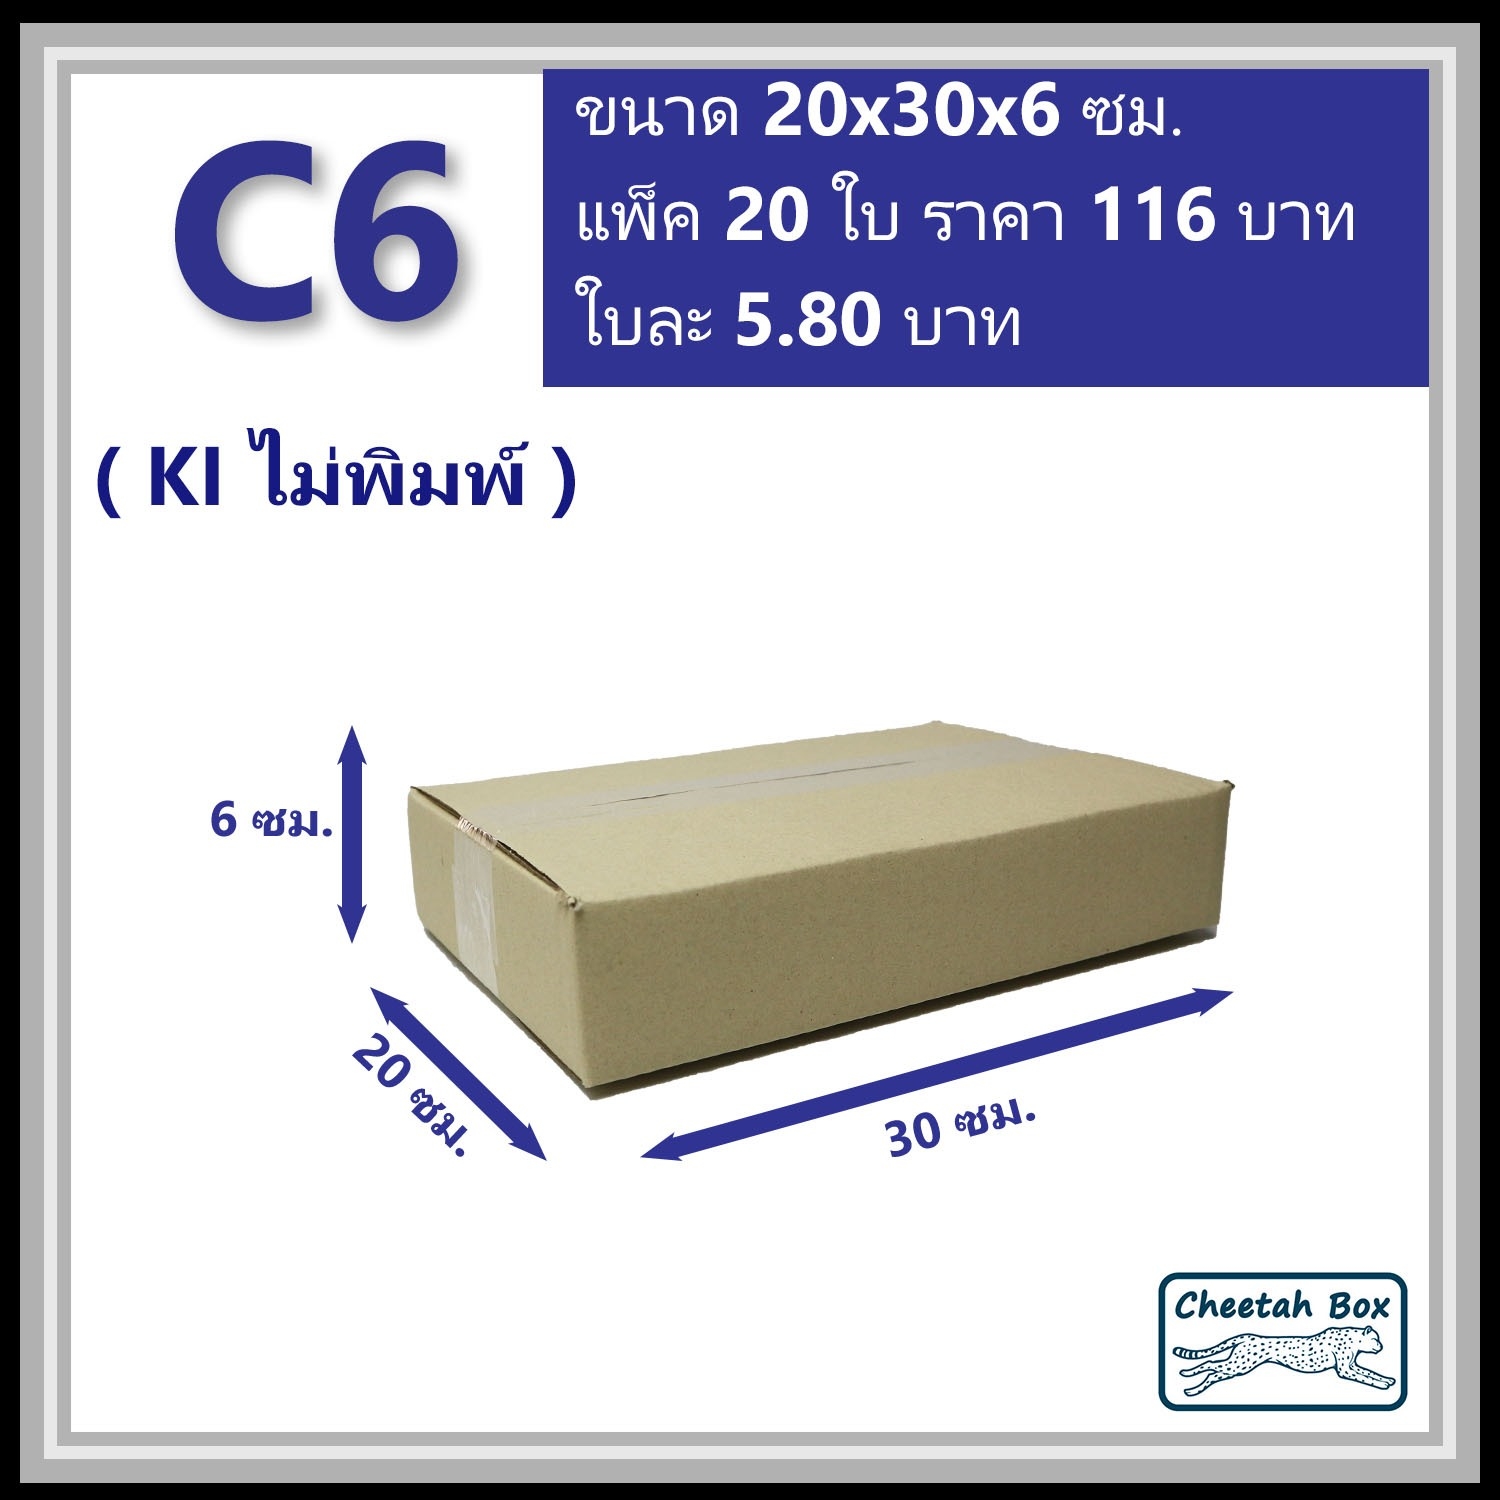 กล่องพัสดุ C6 ไม่พิมพ์ (Post Box) ลูกฟูก 3 ชั้น ขนาด 20W x 30L x 6H cm.